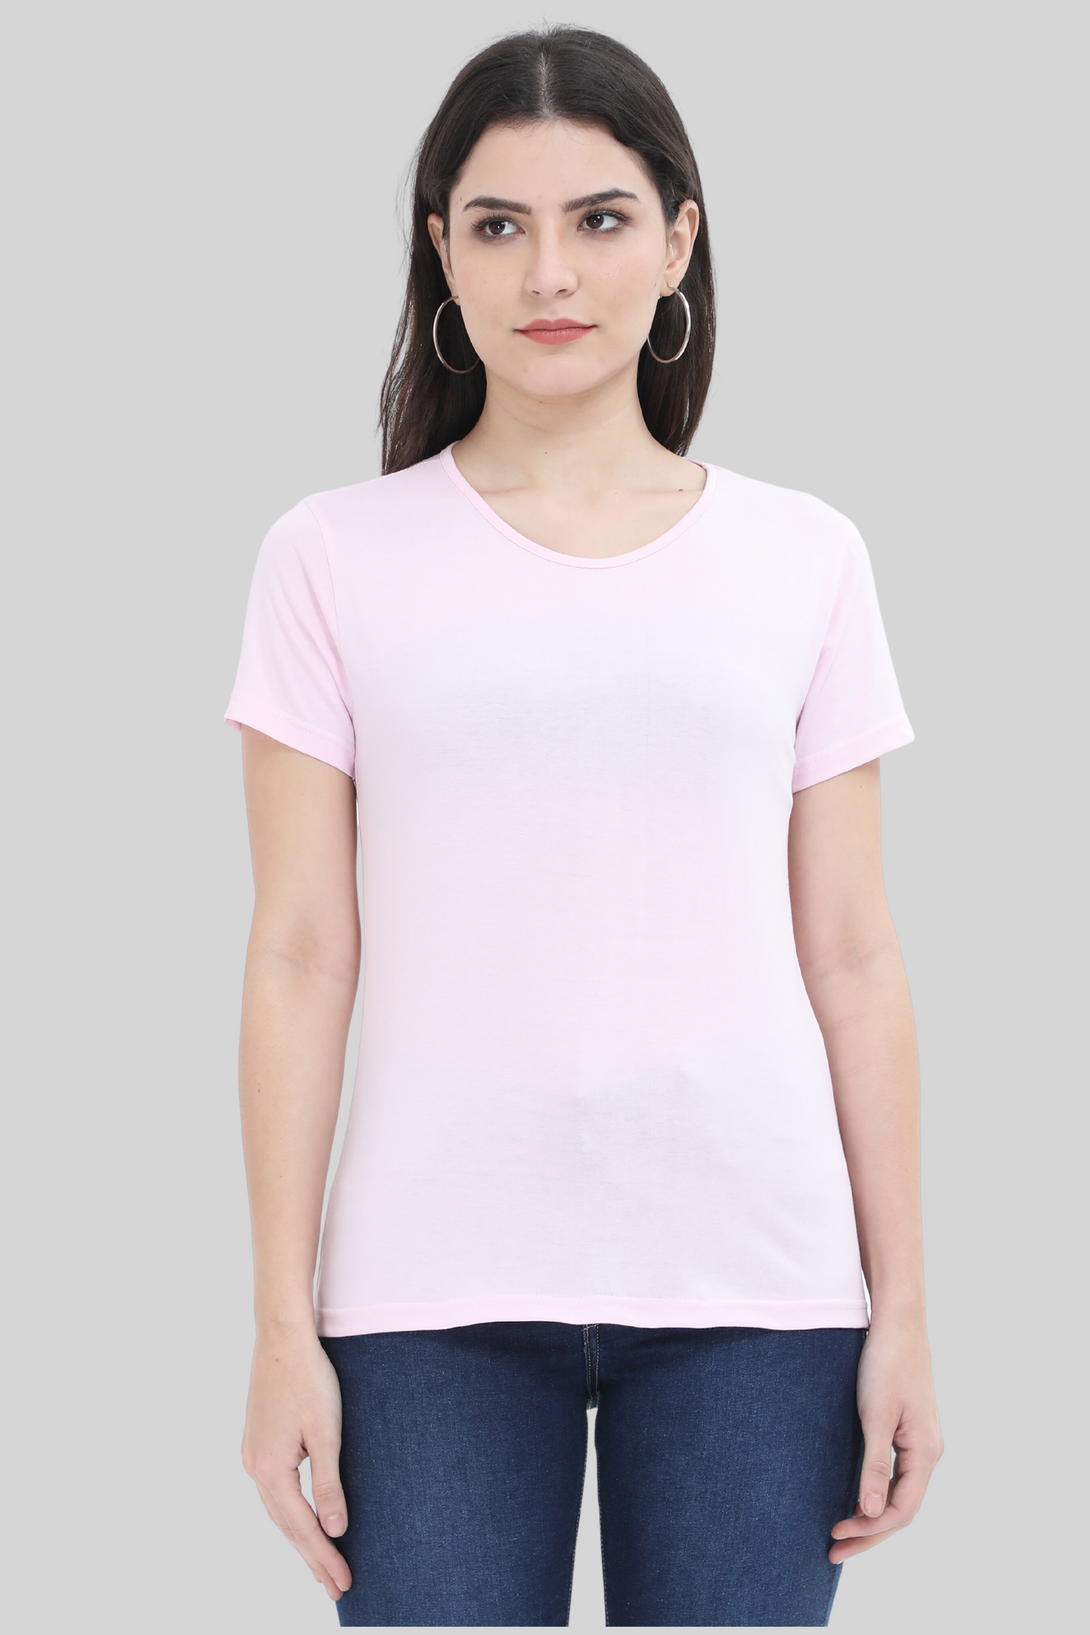 Light Pink Scoop Neck T-Shirt For Women - WowWaves